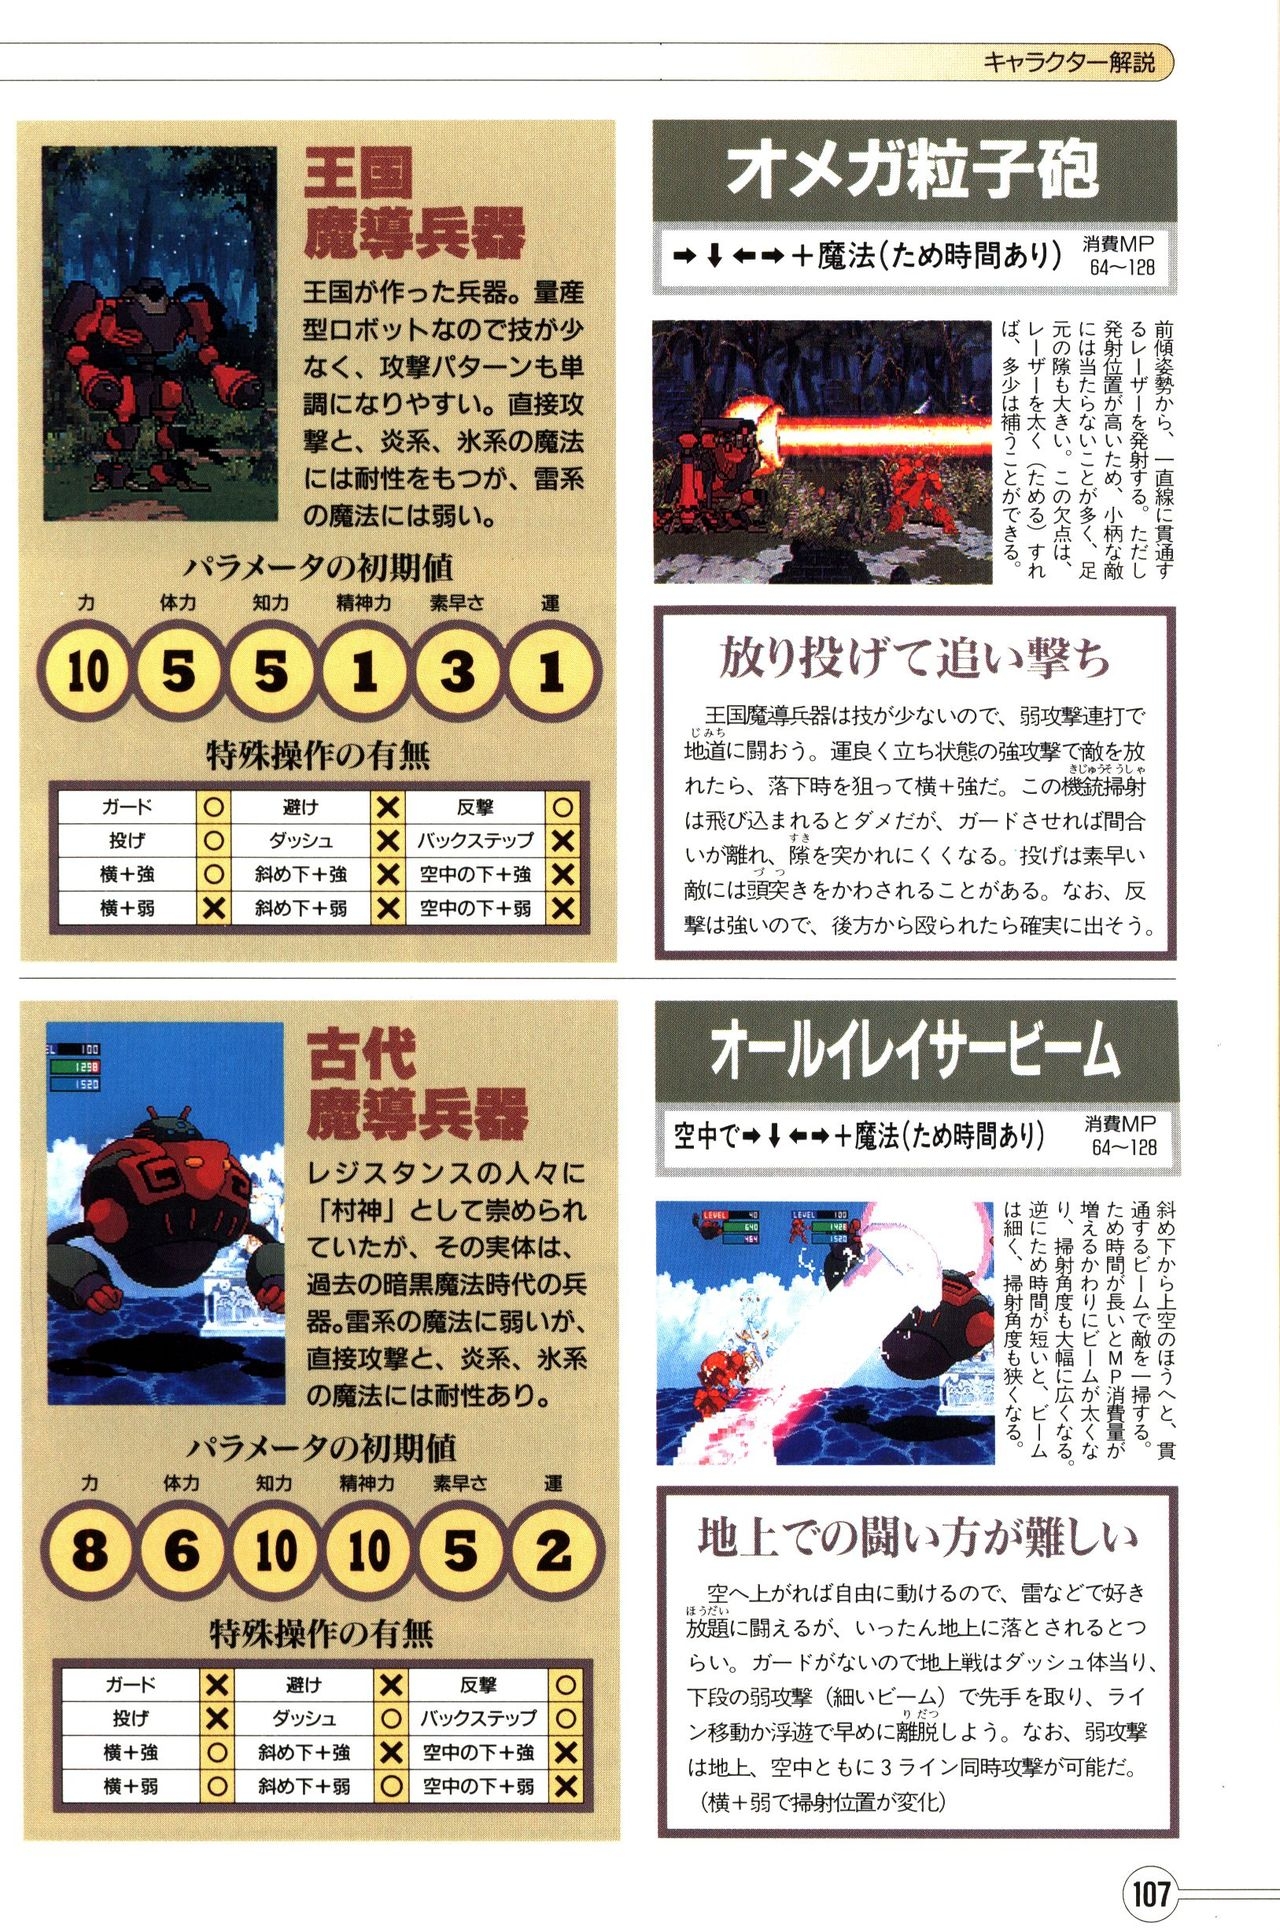 Guardian Heroes Perfect Guide (Sega Saturn magazine books) 109